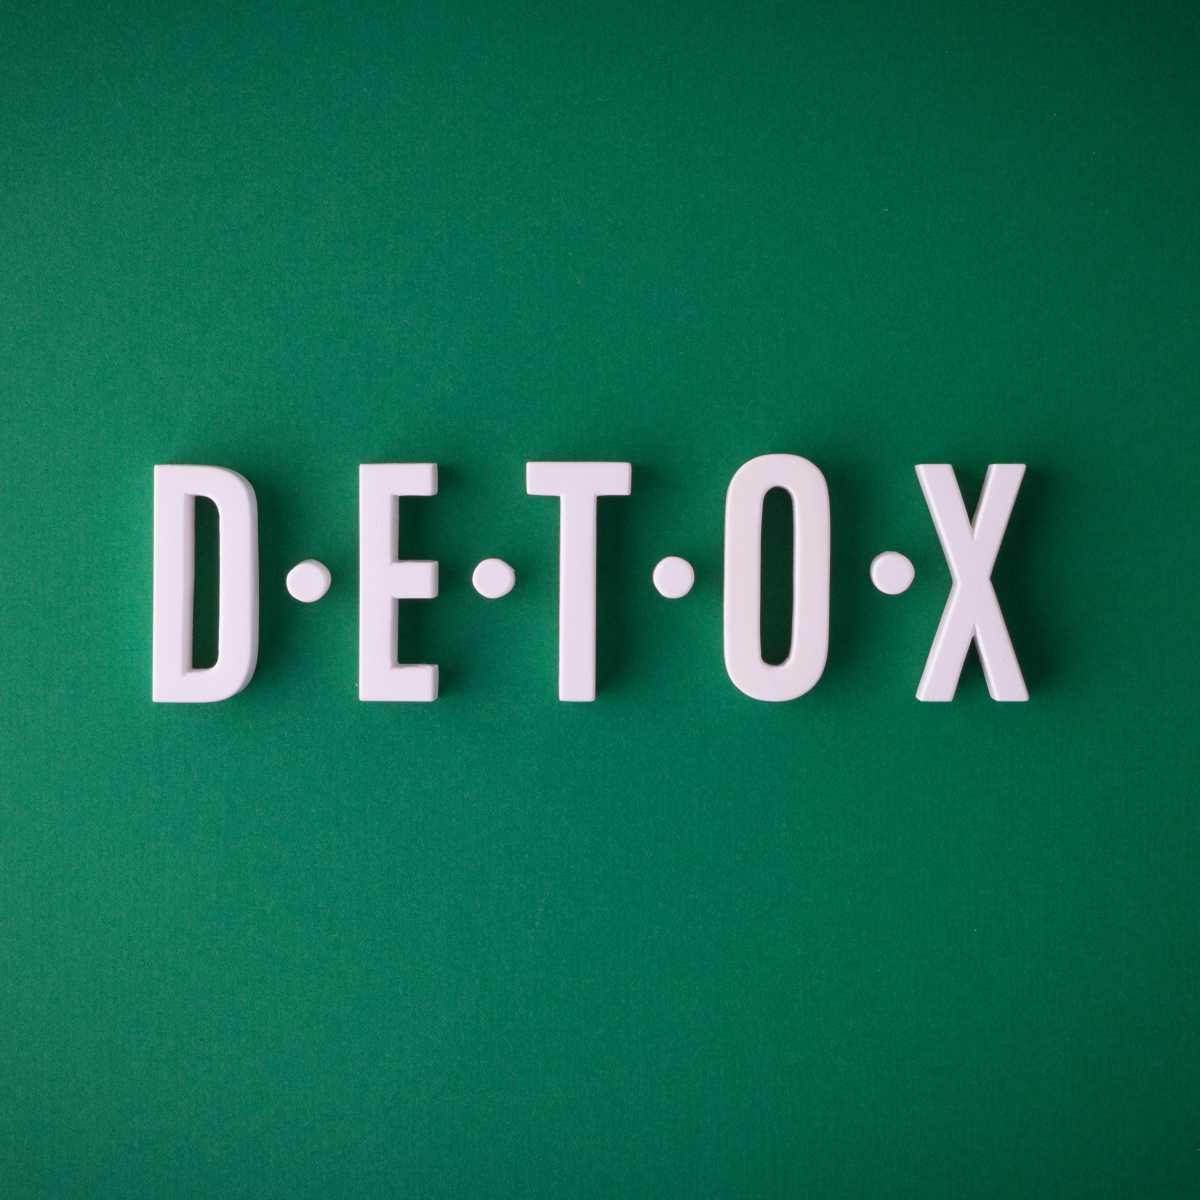 4. Quando é que se deve fazer uma cura detox?